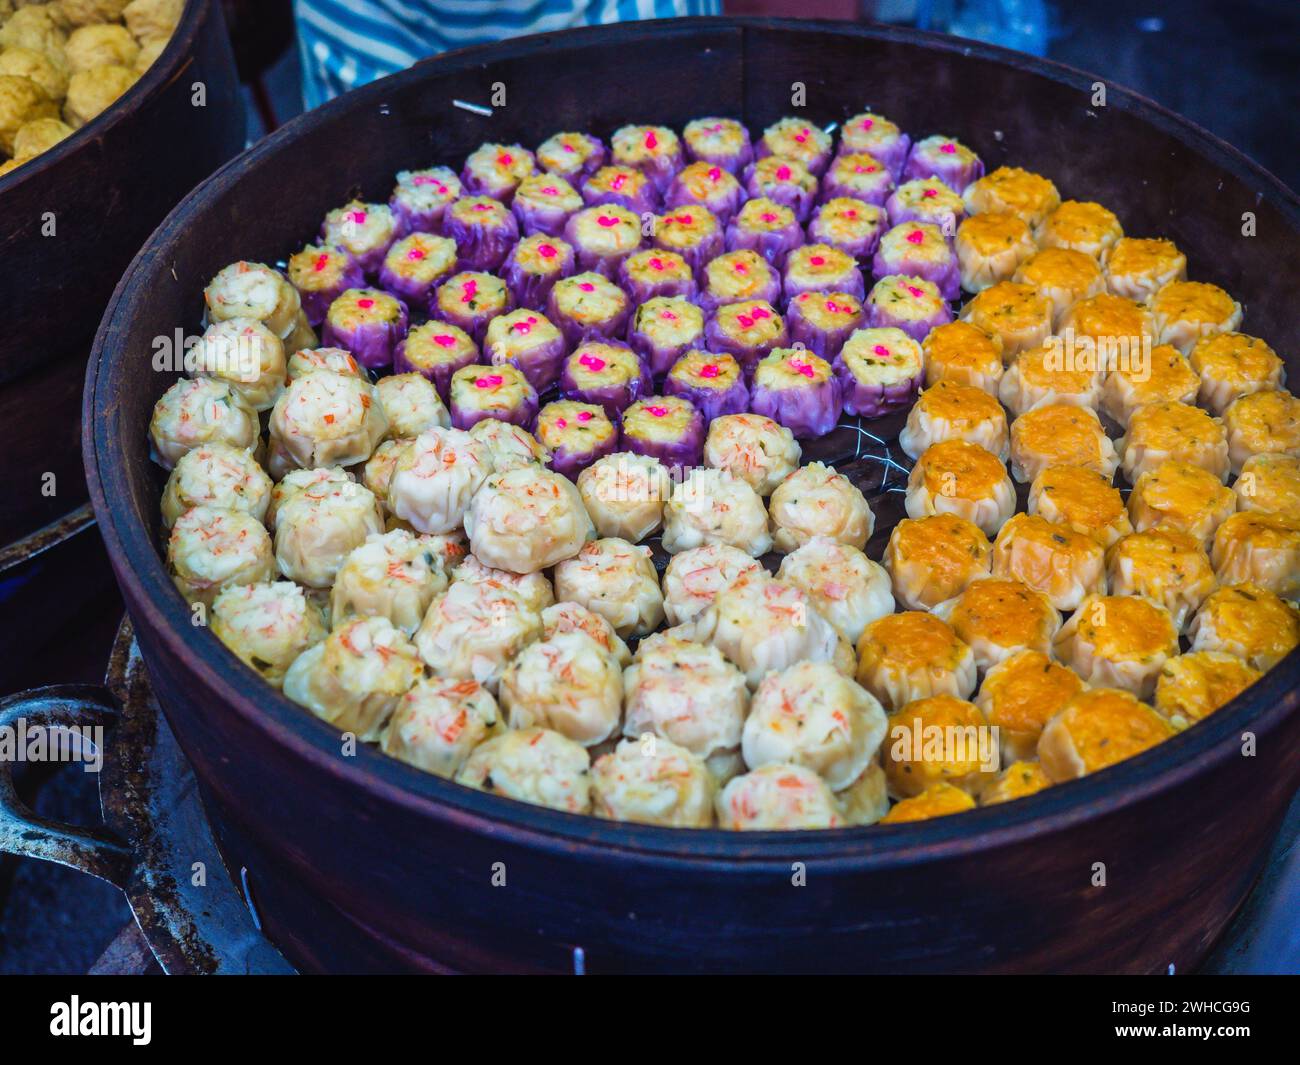 Colorato dim sum al vapore, gnocchi cinesi in una vaporiera in legno. Venditore di gnocchi nel mercato asiatico del cibo di strada in Malesia e Taiwan Foto Stock